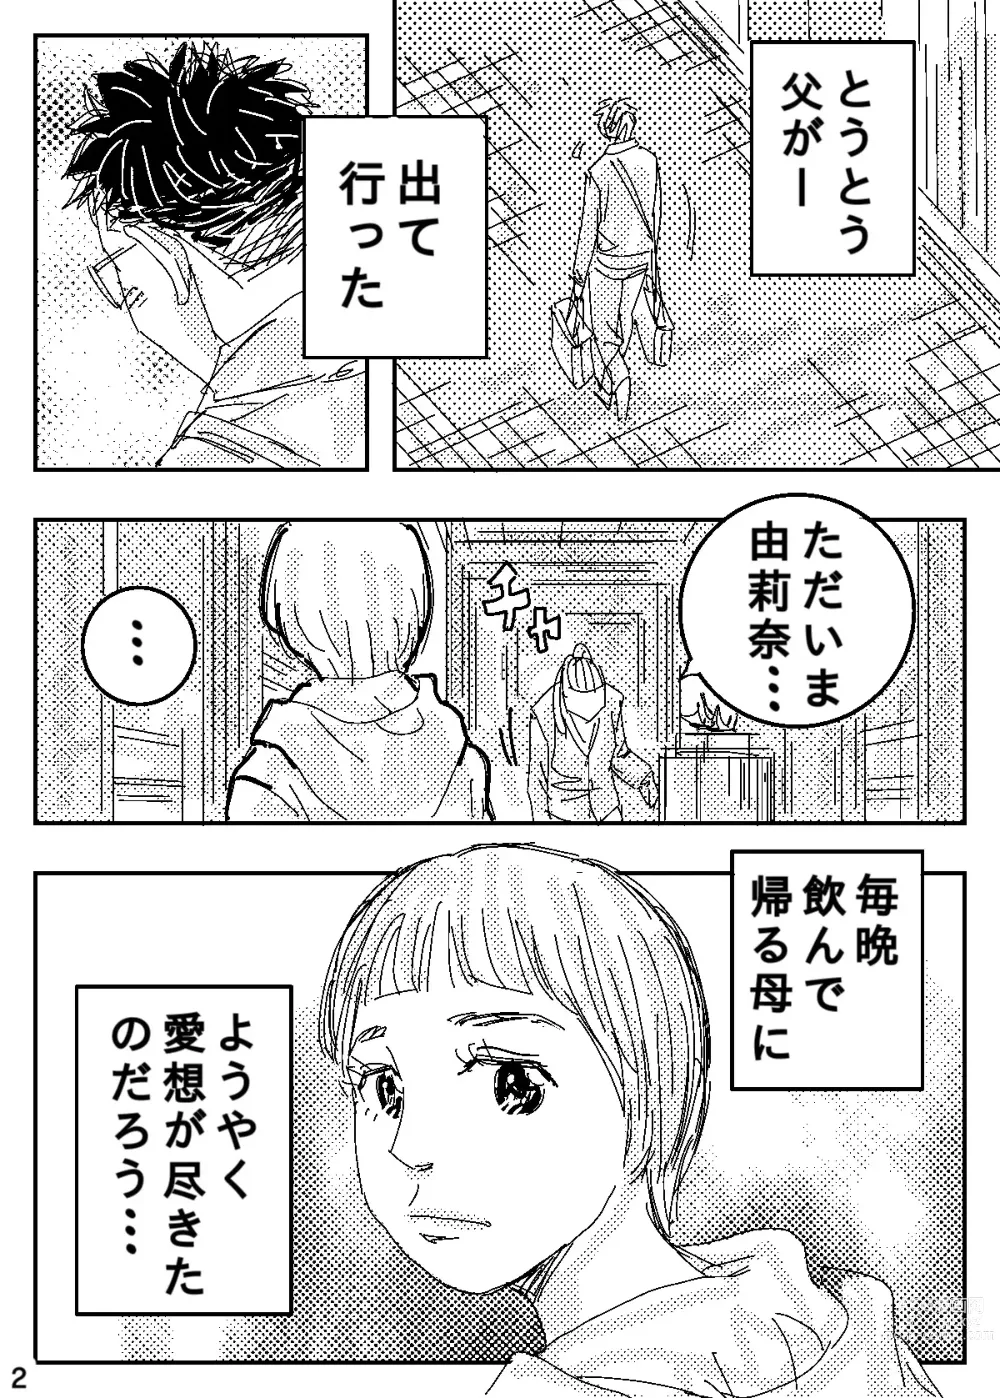 Page 2 of doujinshi Gesu no Kiwami Kazoku